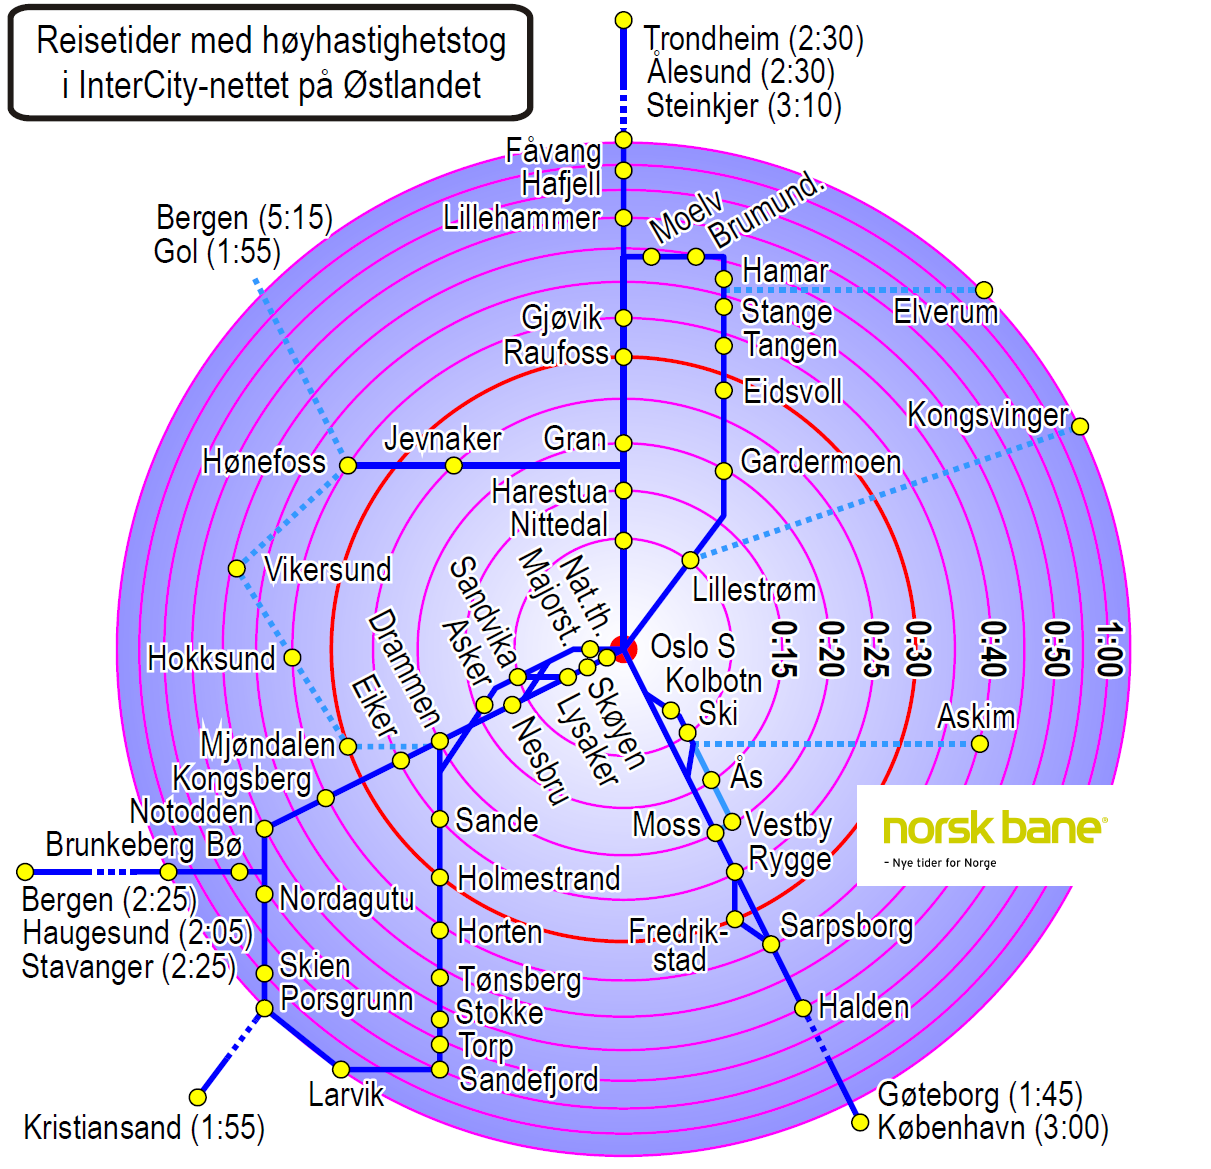 Deutsche Bahn integrerer hele IC-trafikken i samme nett,